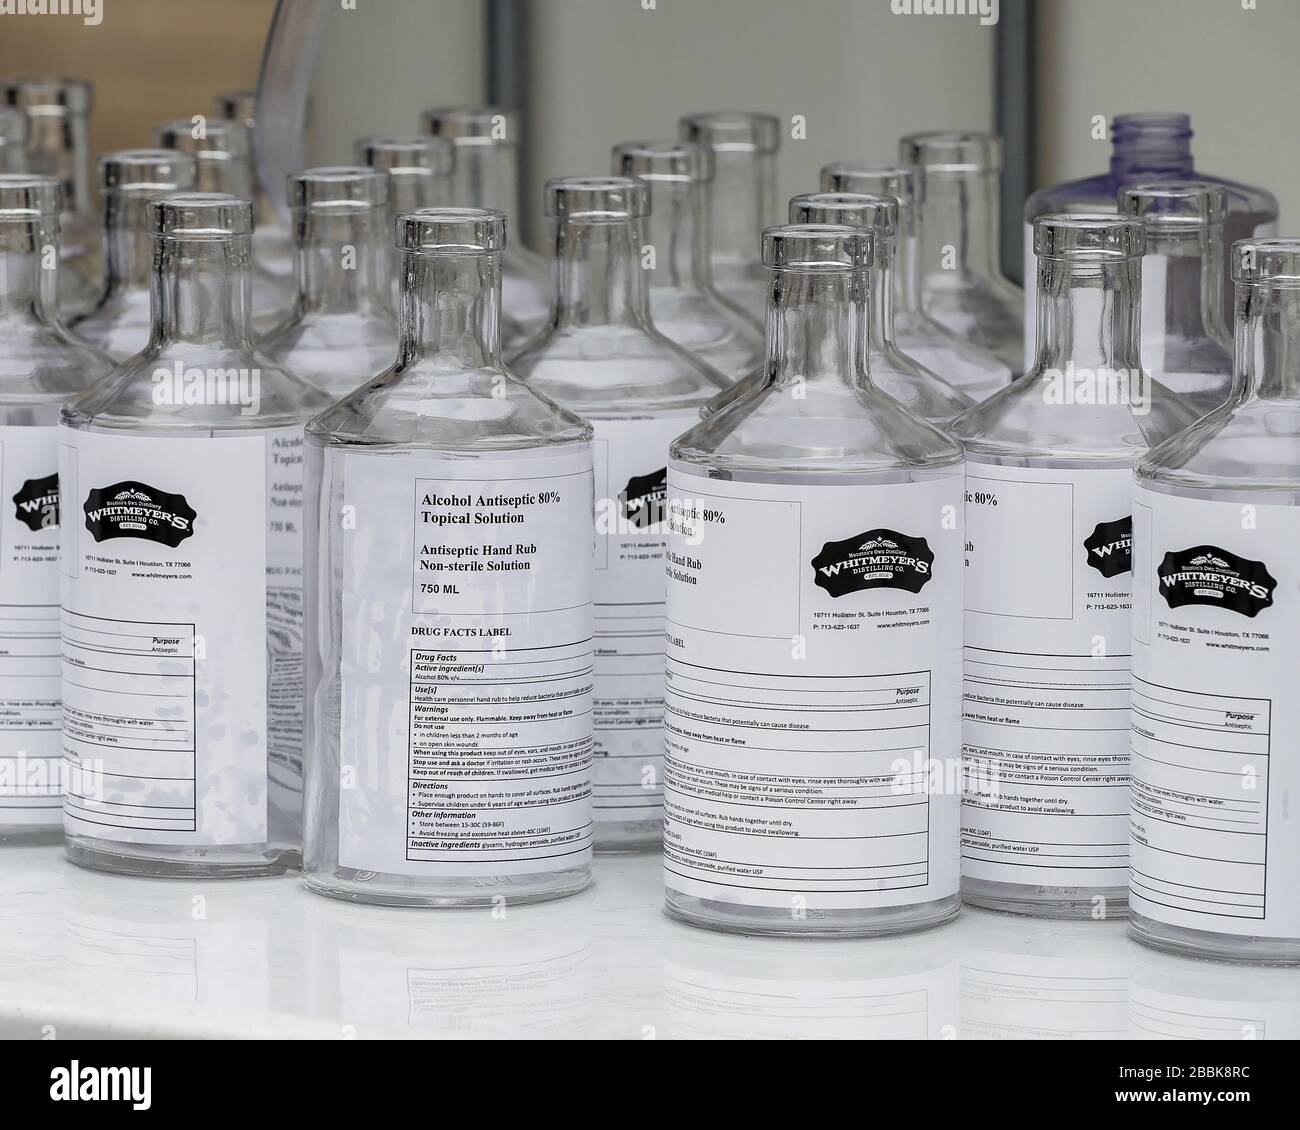 Houston, TX - 31 marzo 2020: Bottiglie di vetro vuote alla Whitmeyer's distiling Co. Da riempire con igienizzatore per mani per la distribuzione alla comunità. Foto Stock